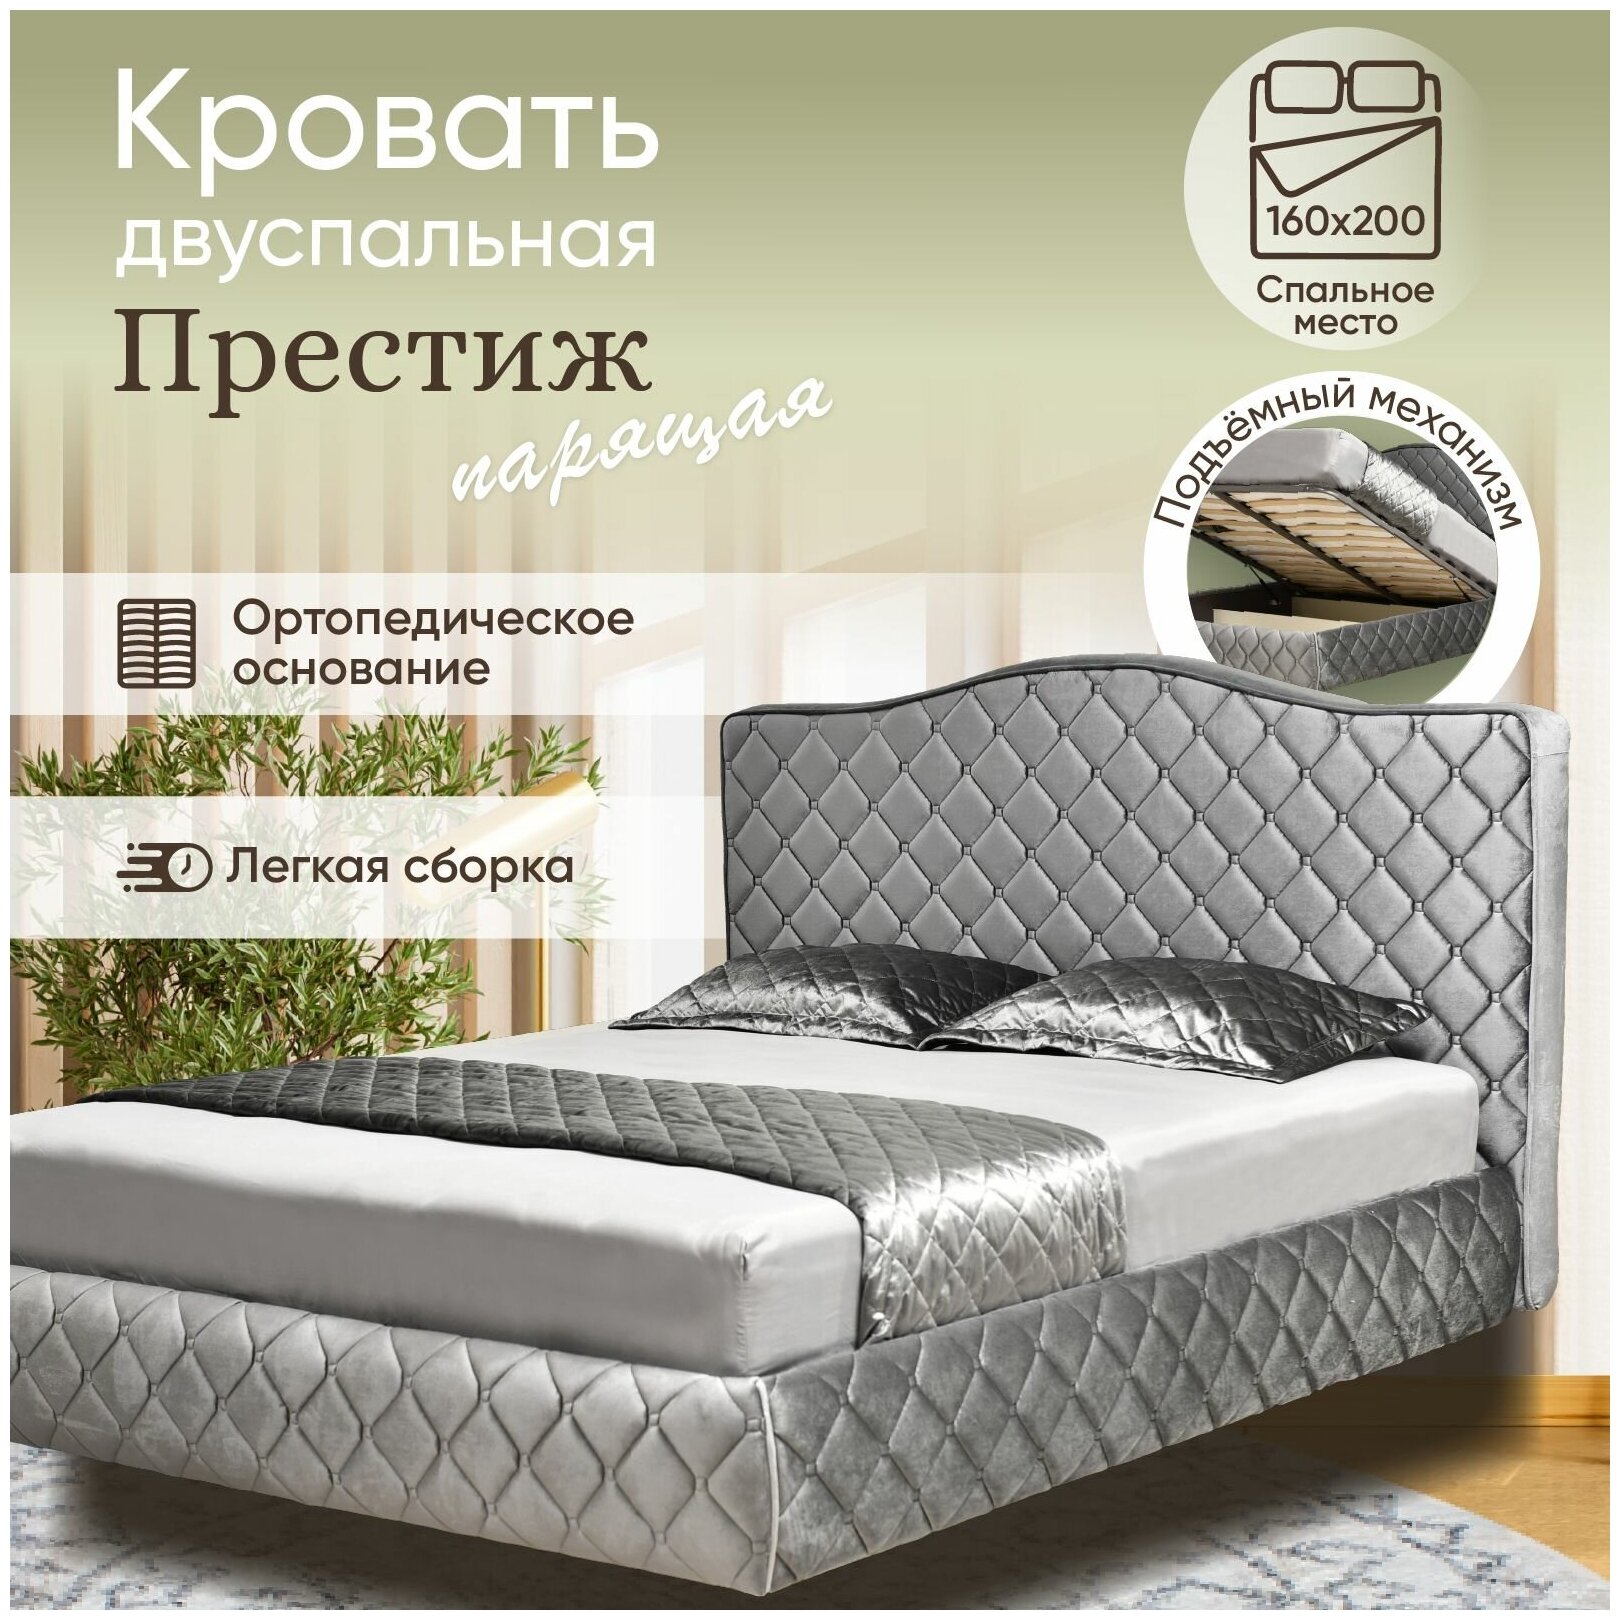 Парящая двуспальная кровать Престиж, сп место 160х200 см, подъемный механизм, усиленные ламели, серый бархат, высокие ножки, АМИ, Беларусь